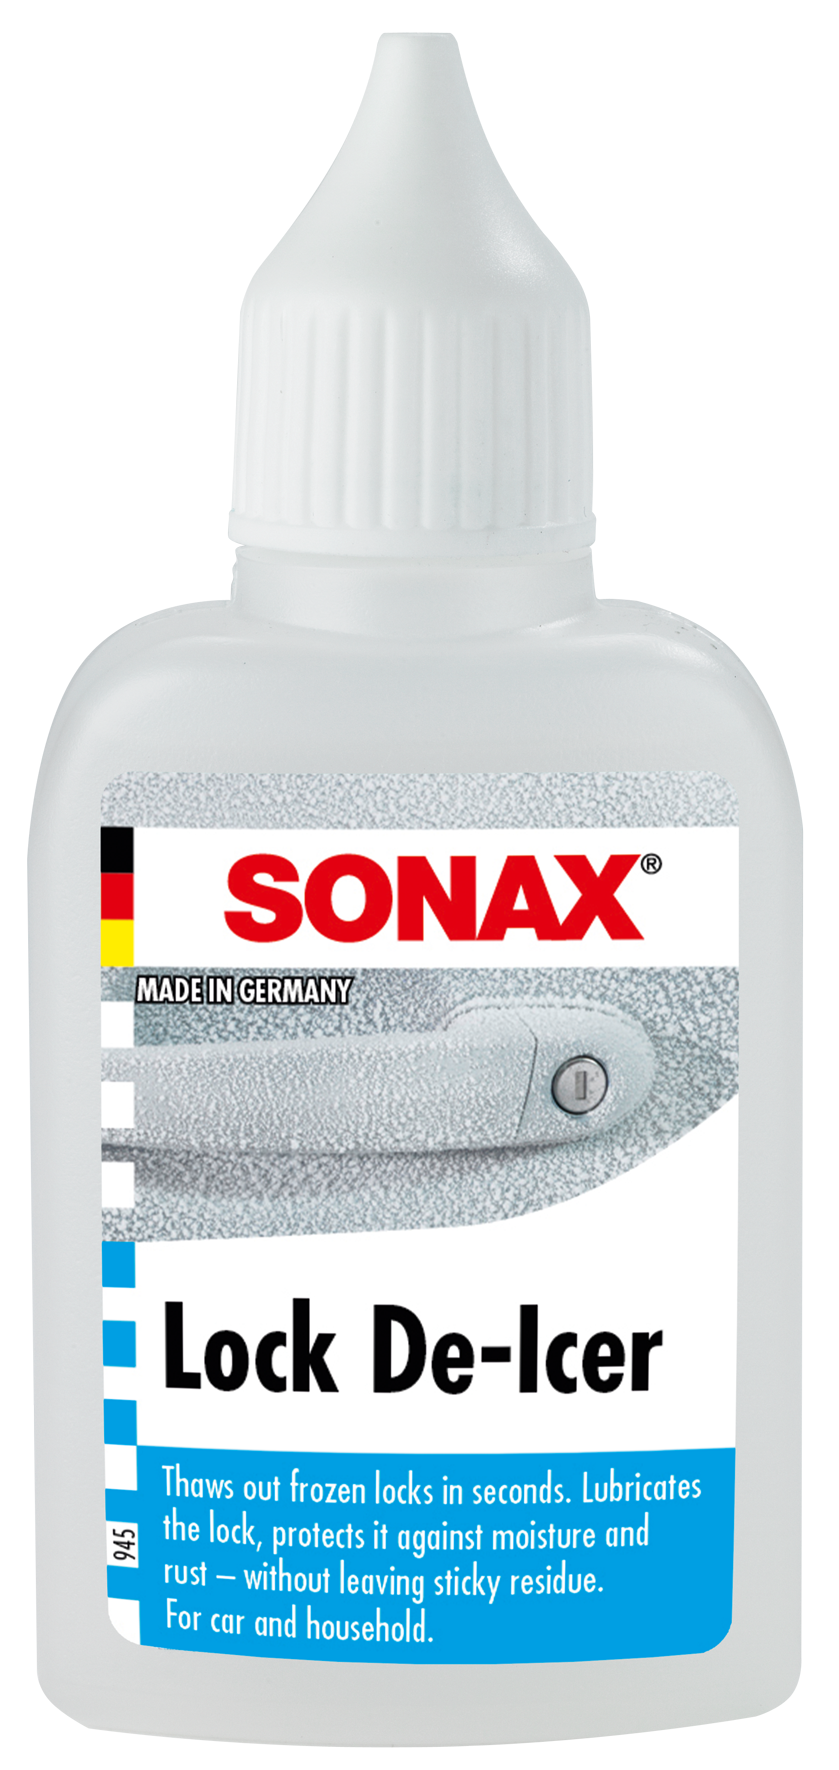 Descarga de imágenes de productos - SONAX Media - site 3